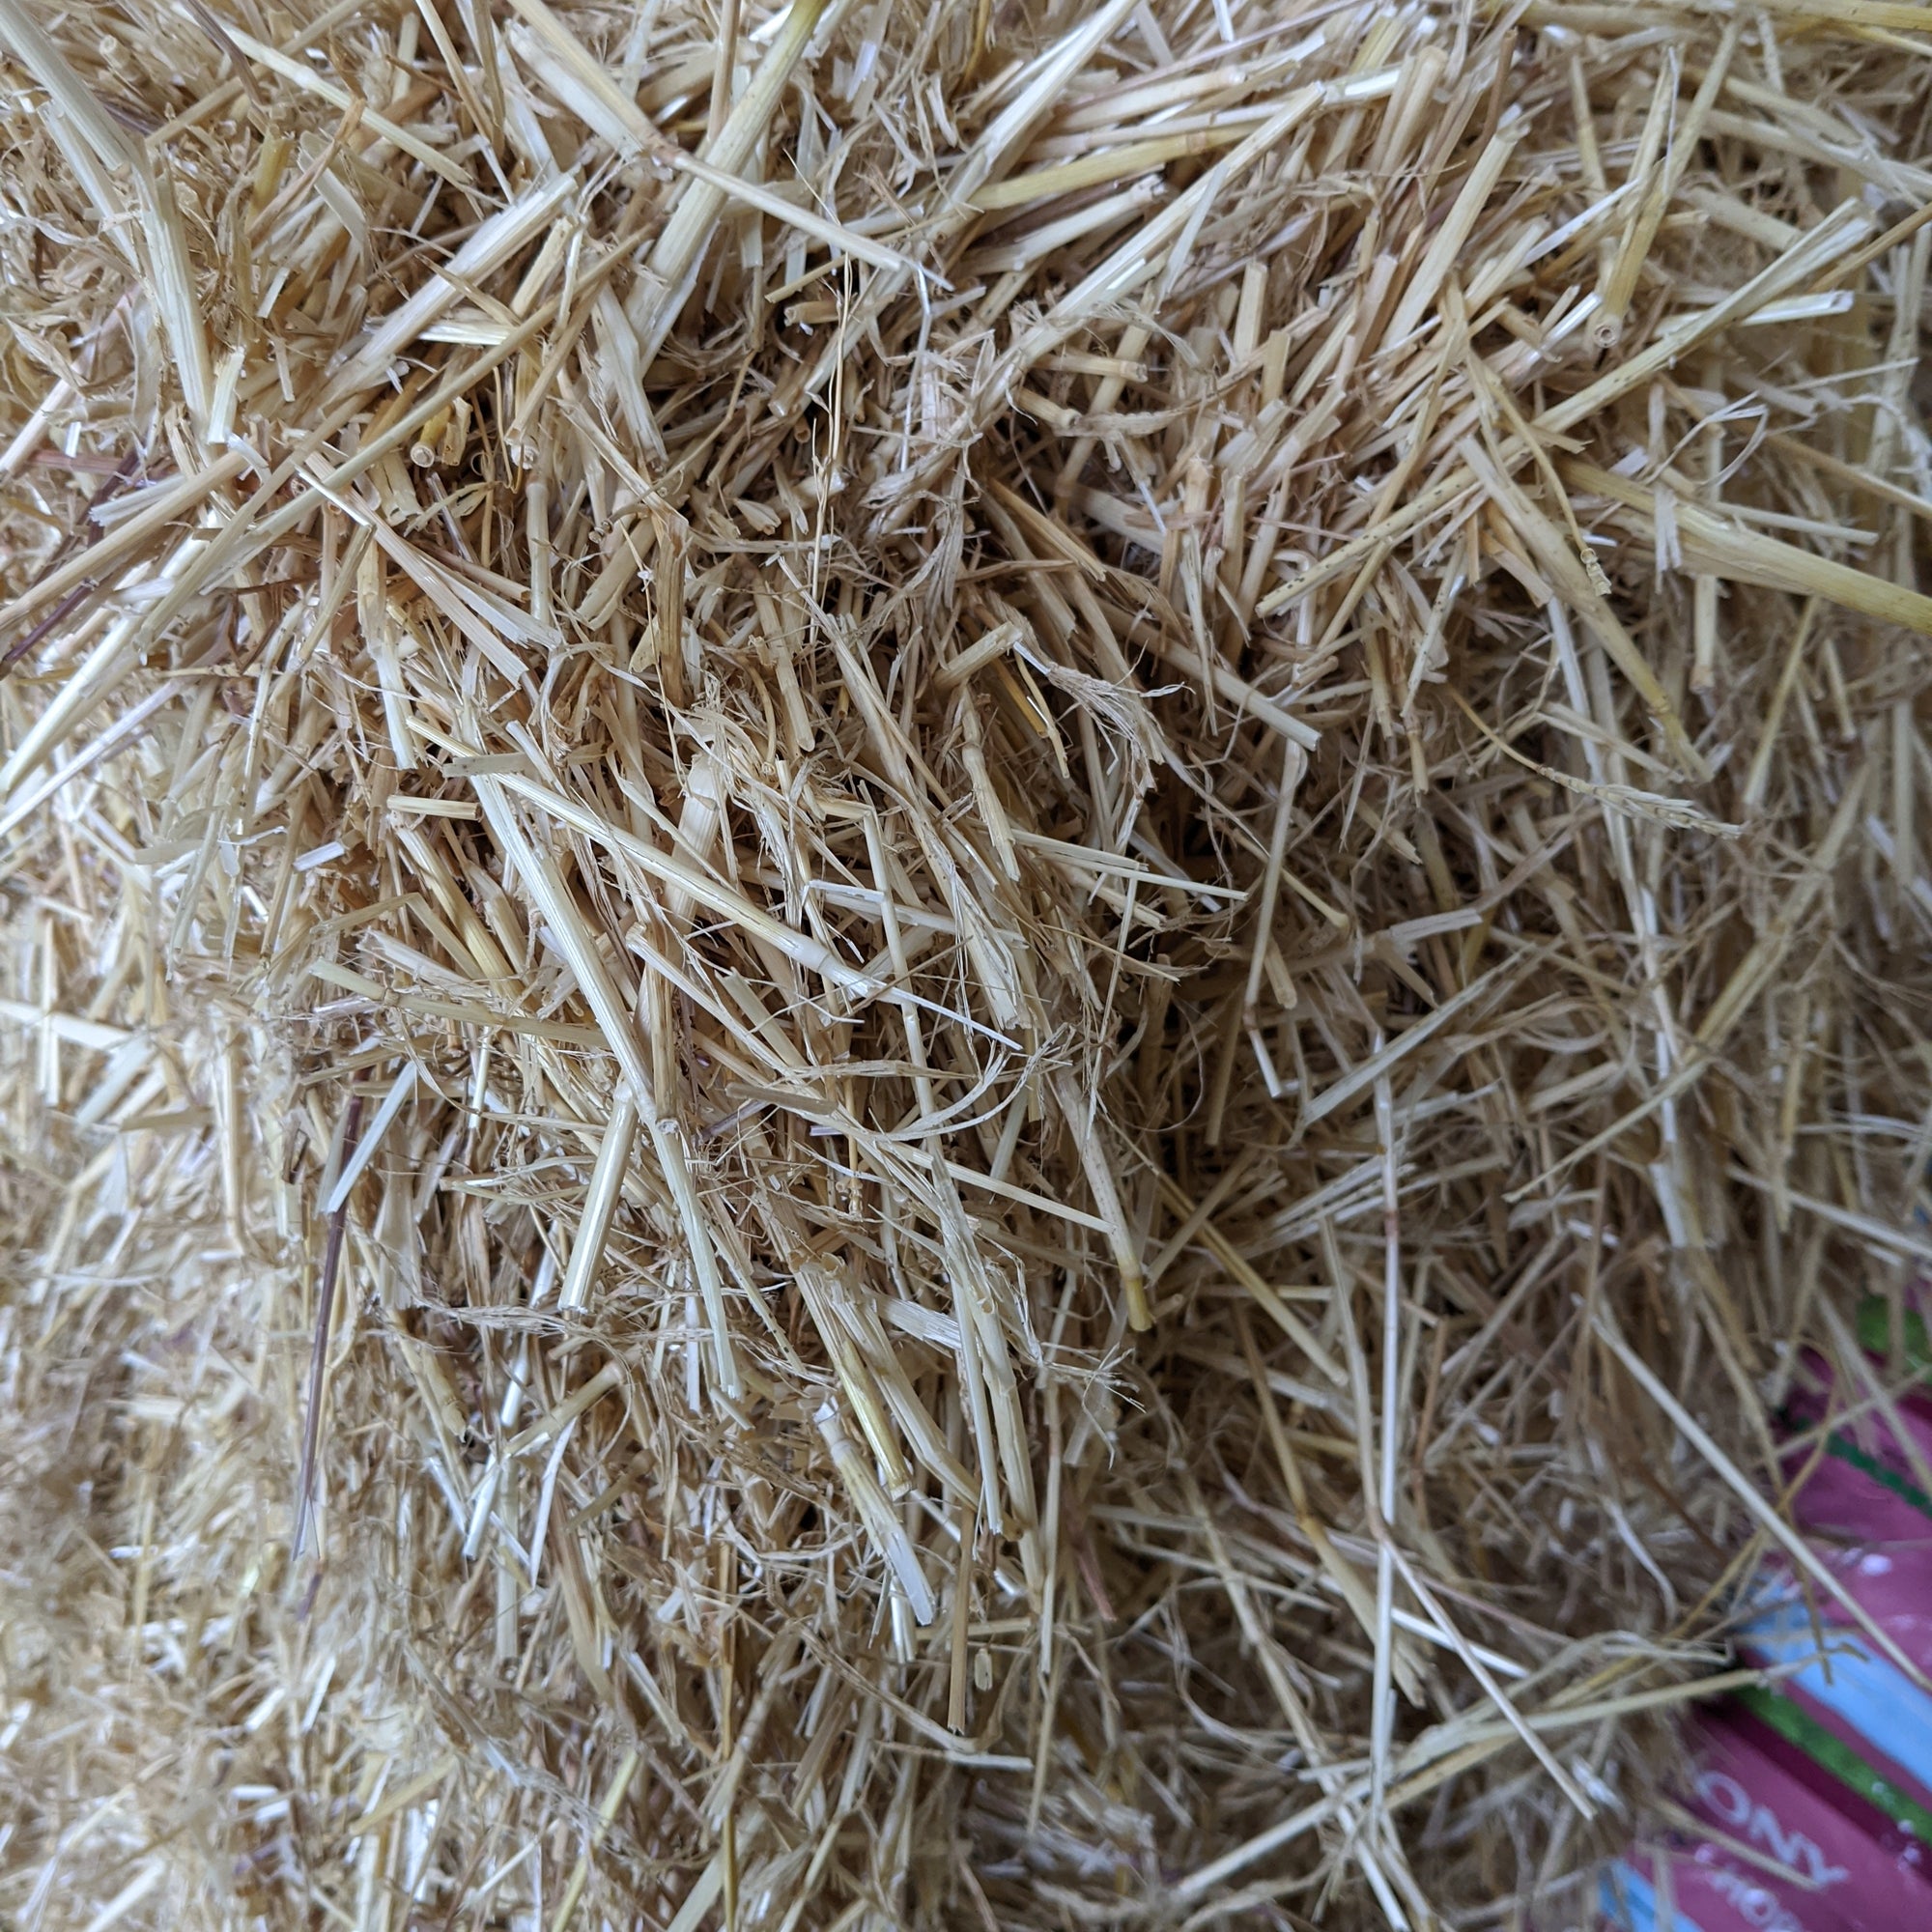 Barley Straw